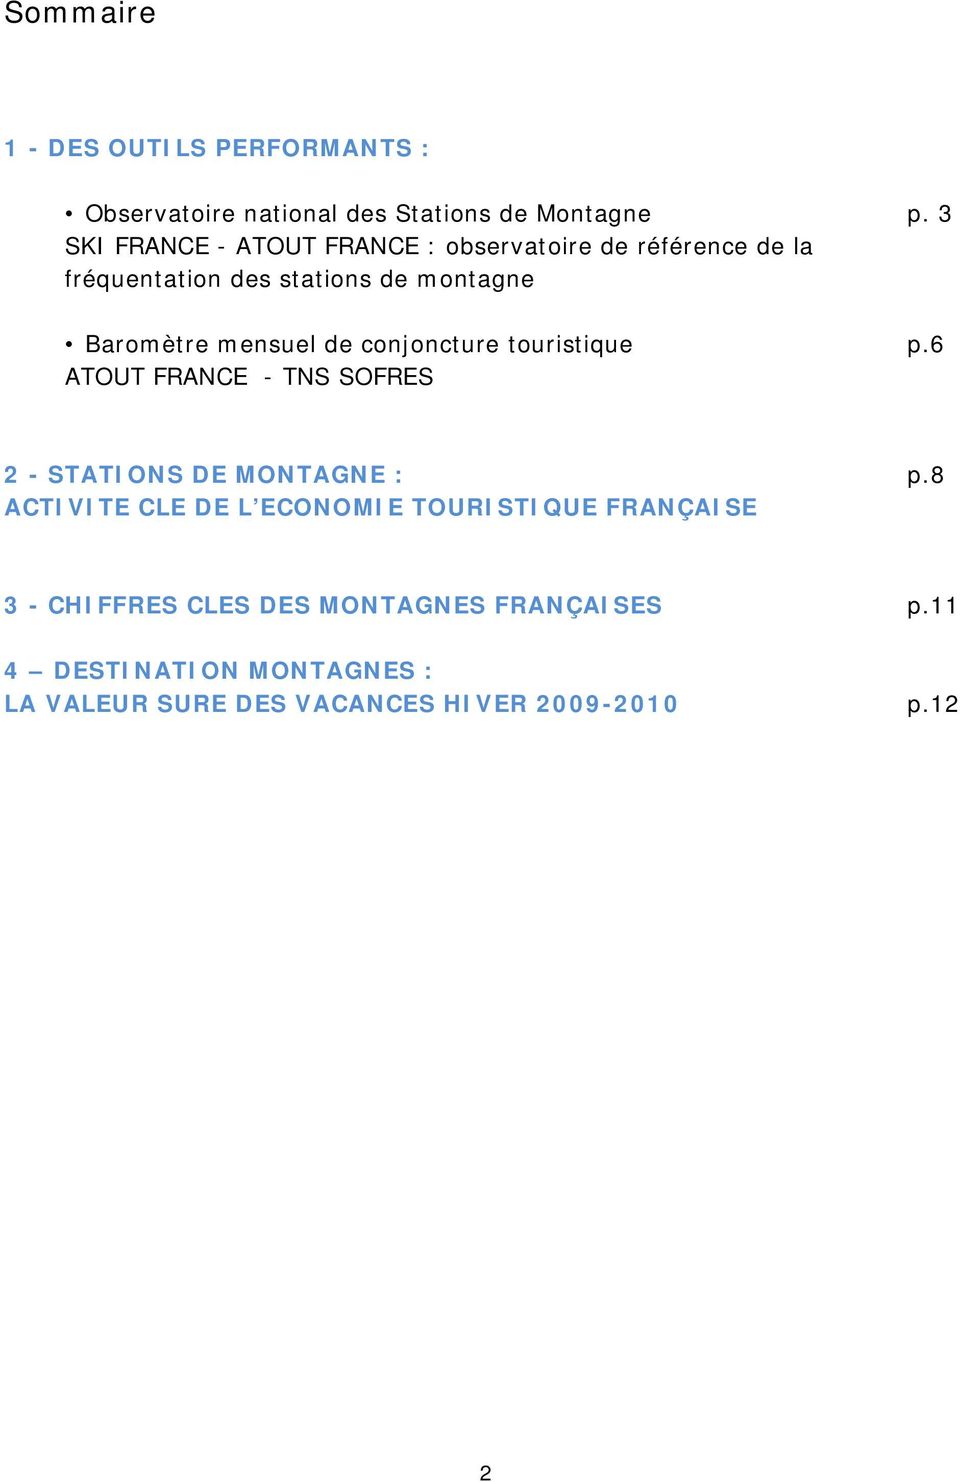 mensuel de conjoncture touristique p.6 ATOUT FRANCE - TNS SOFRES - STATIONS DE MONTAGNE : p.